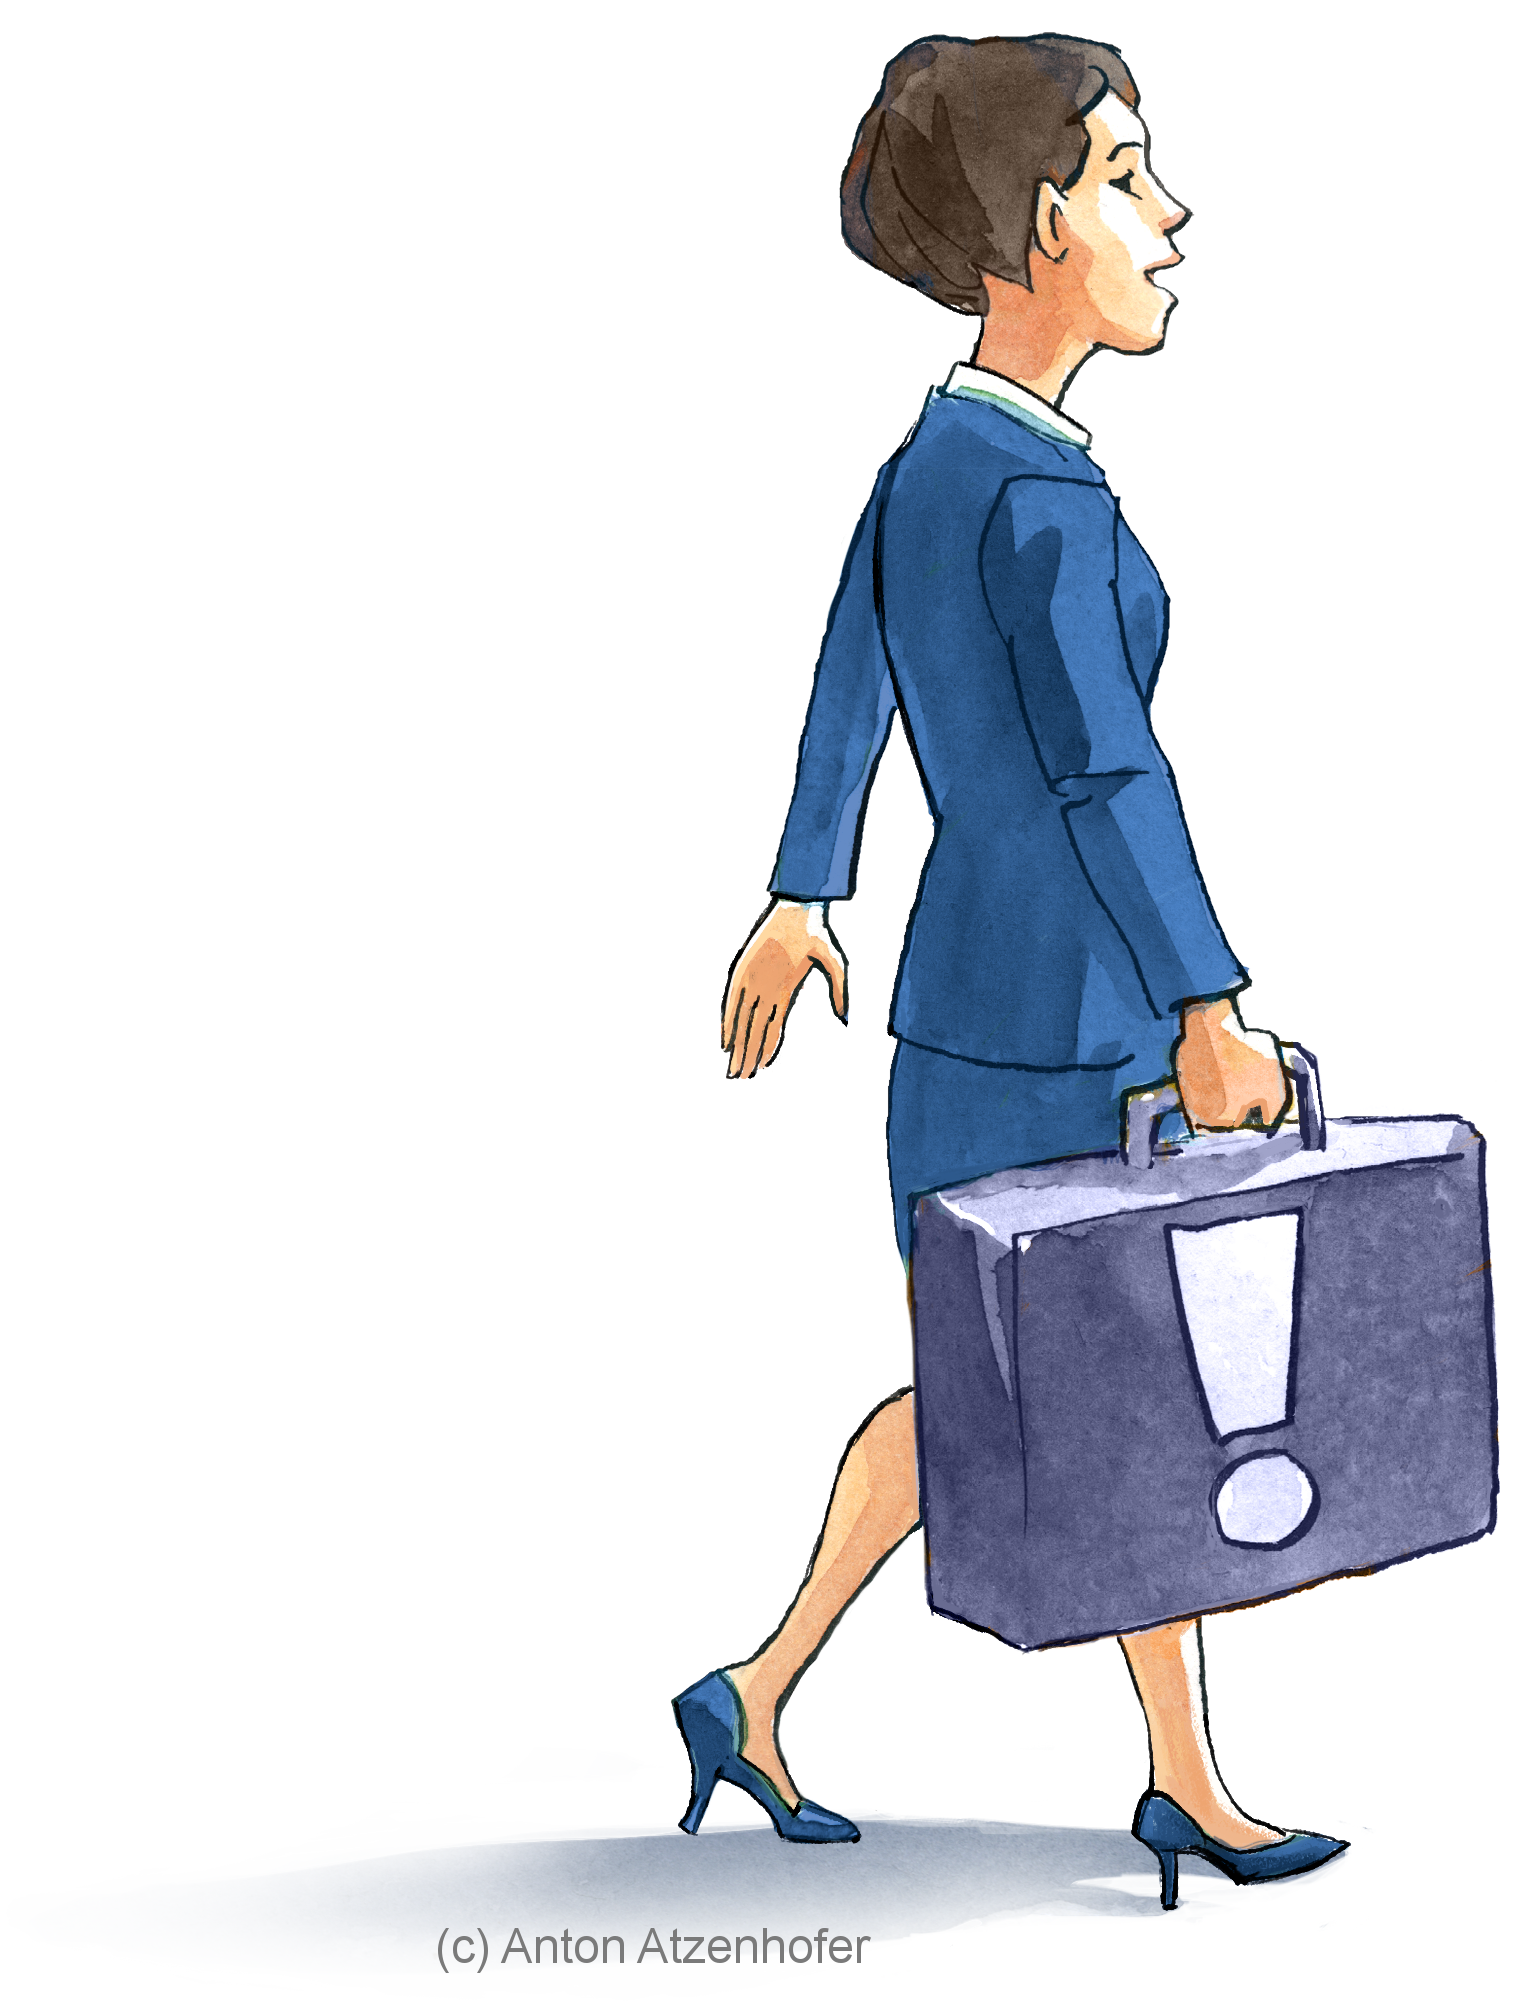 Frau mit Koffer